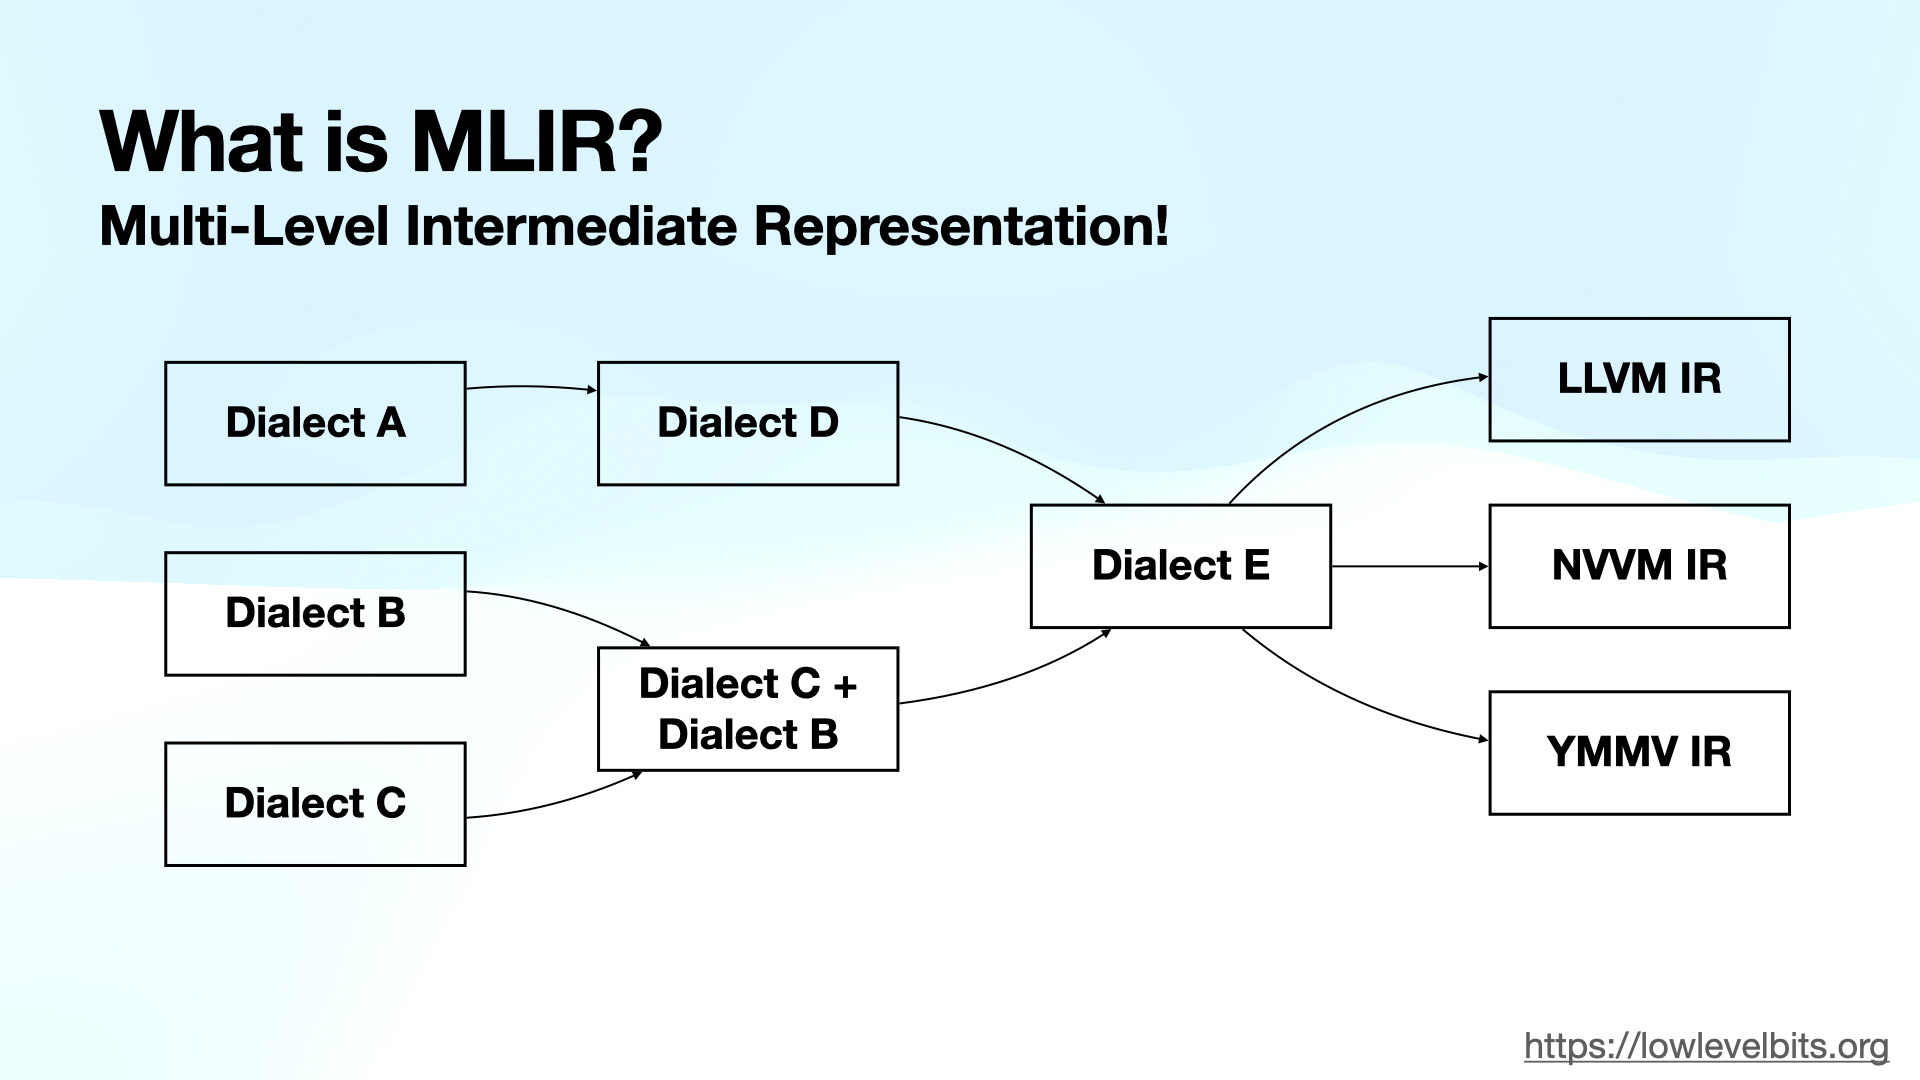 What is MLIR?